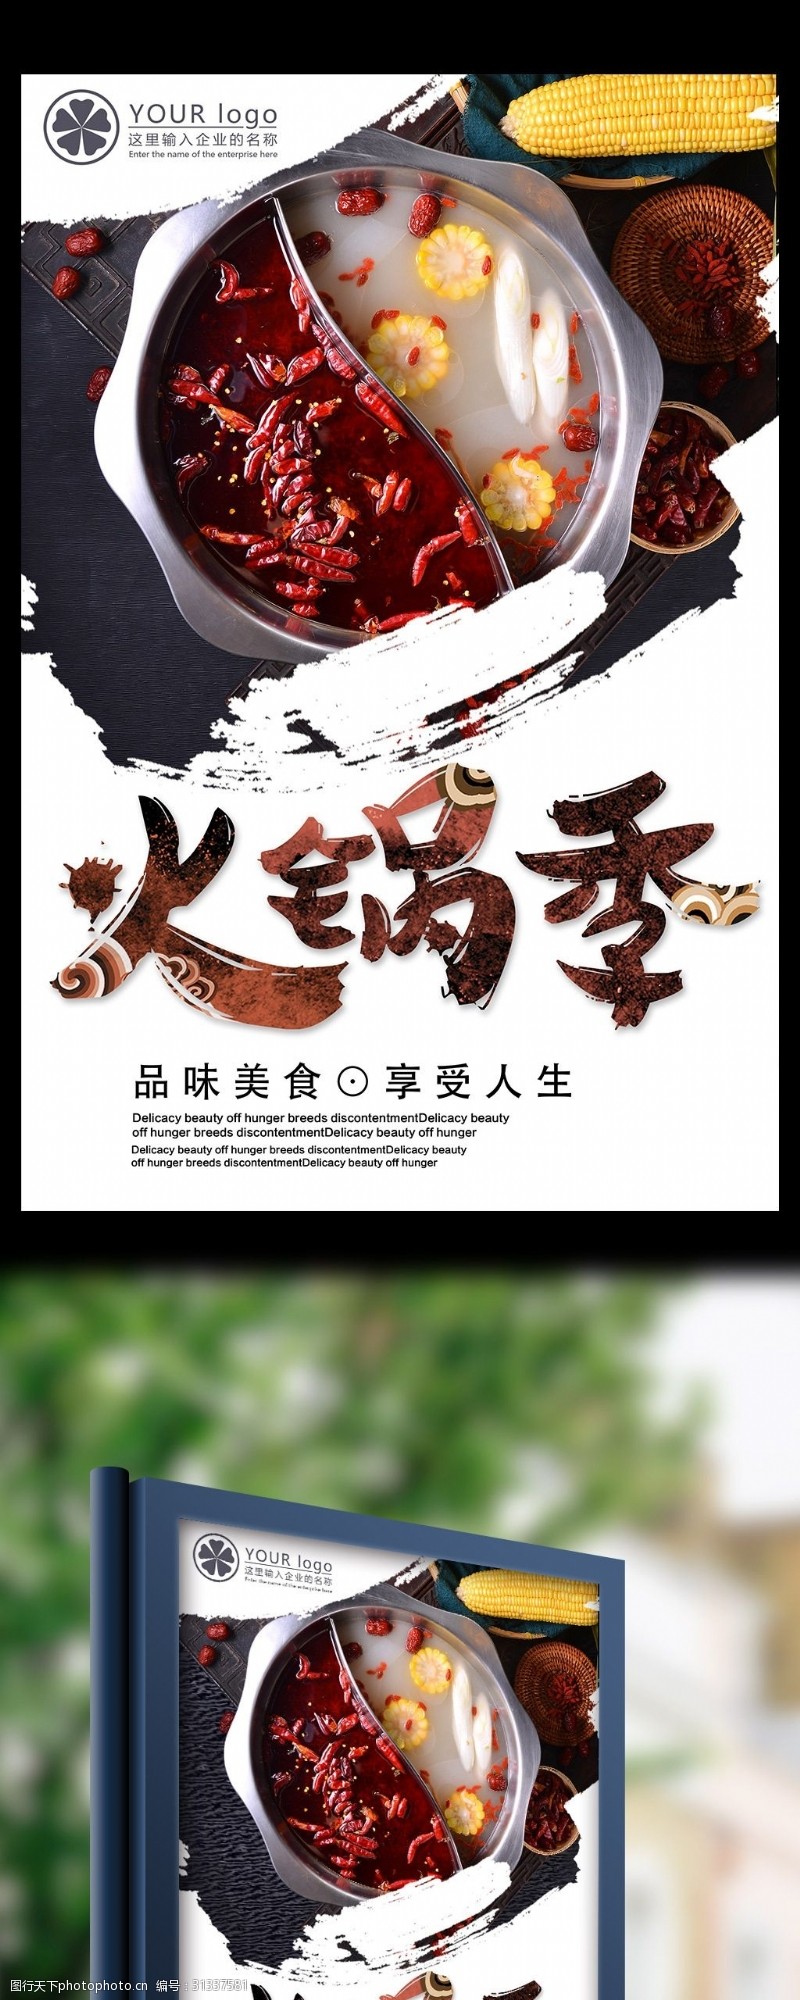 中华美食海报特色火锅店火锅宣传海报模板下载